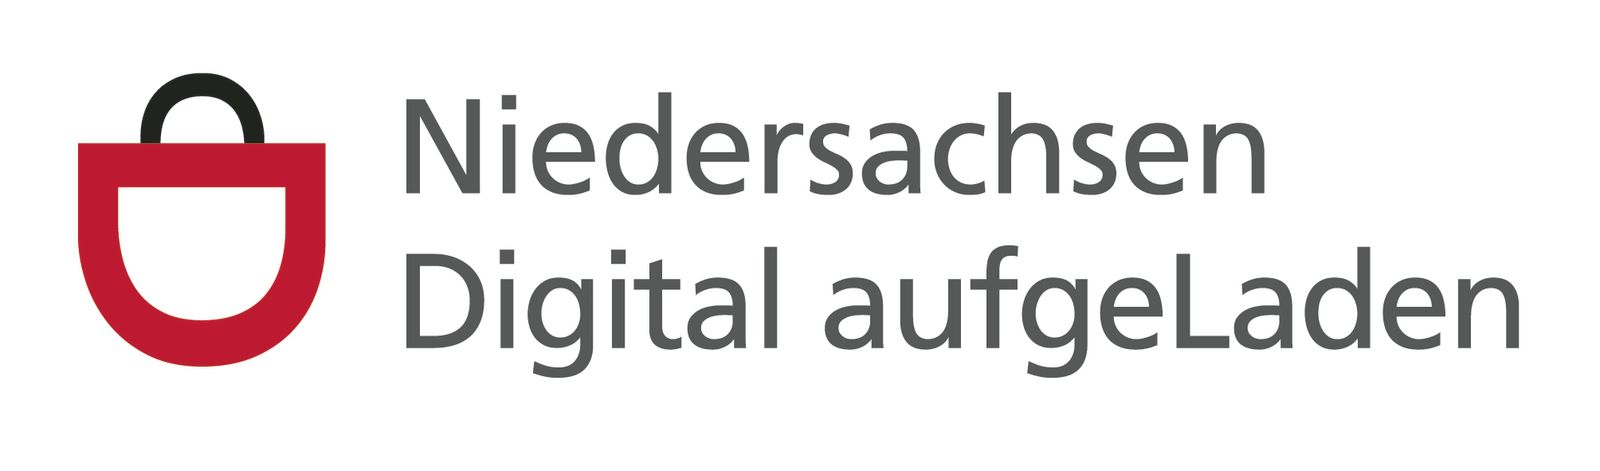 Niedersachsen Digital aufgeLaden